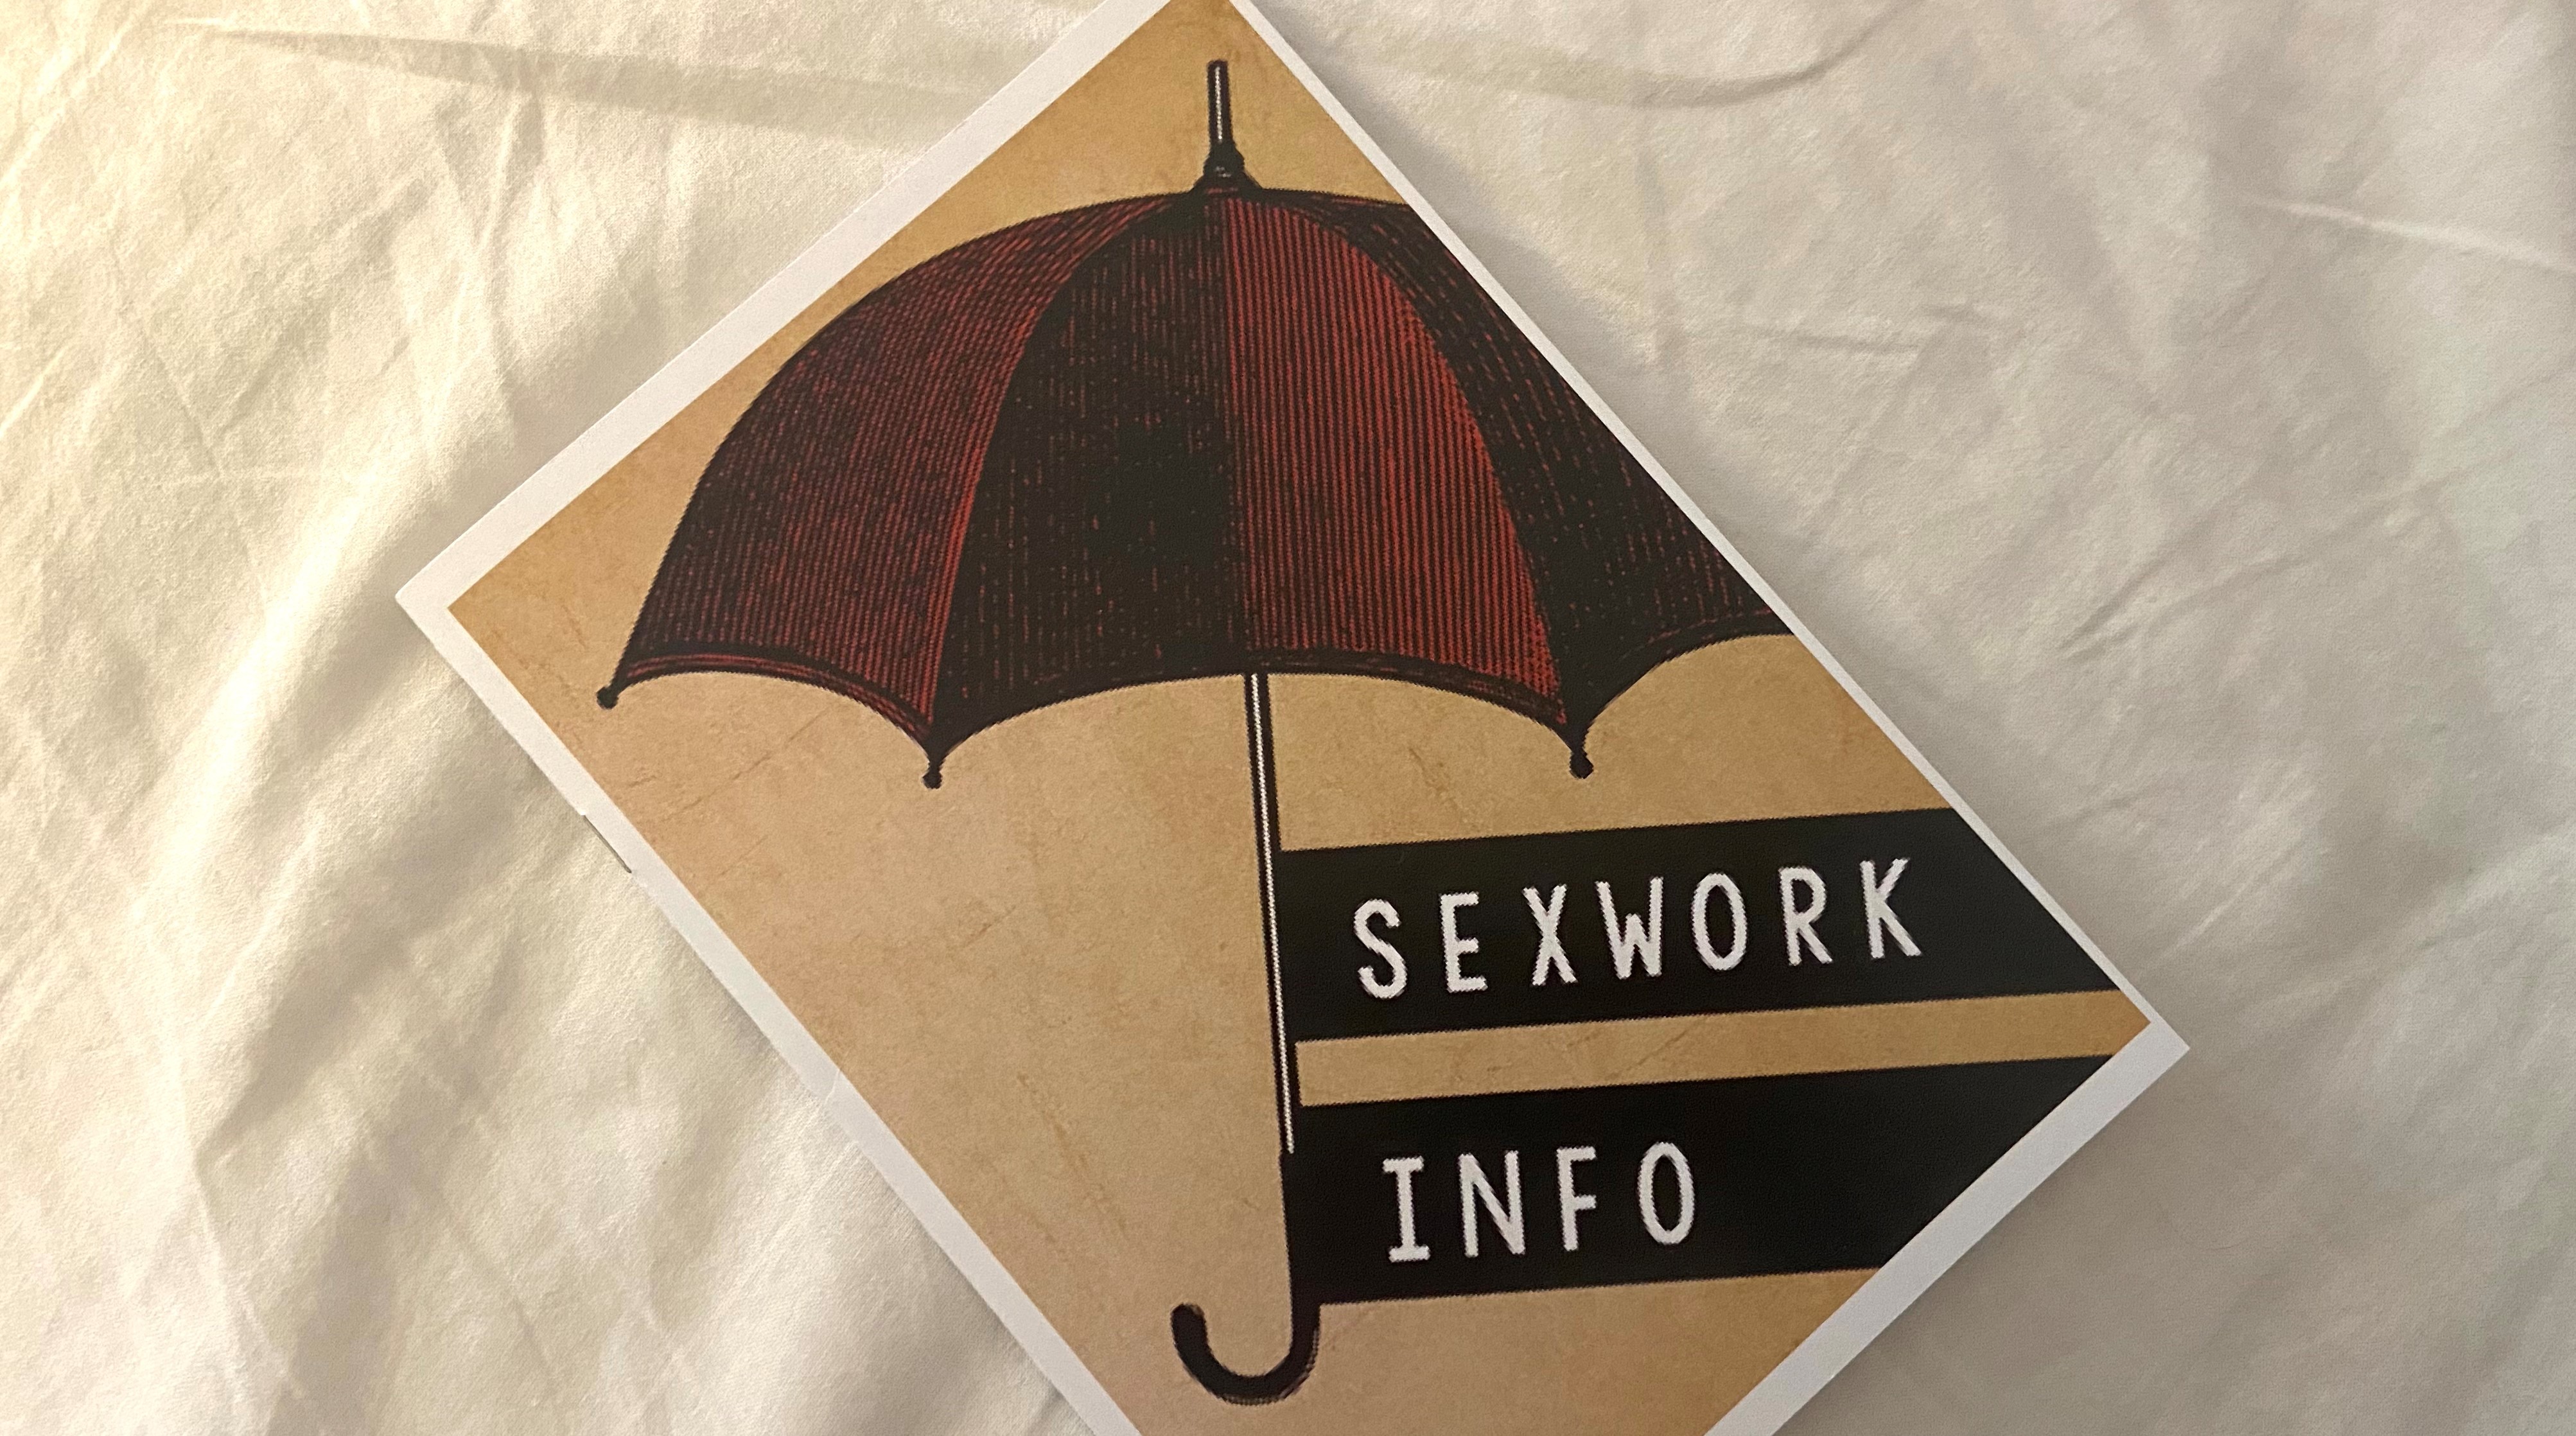 Broschüre, auf der "Sexwork-Info" steht